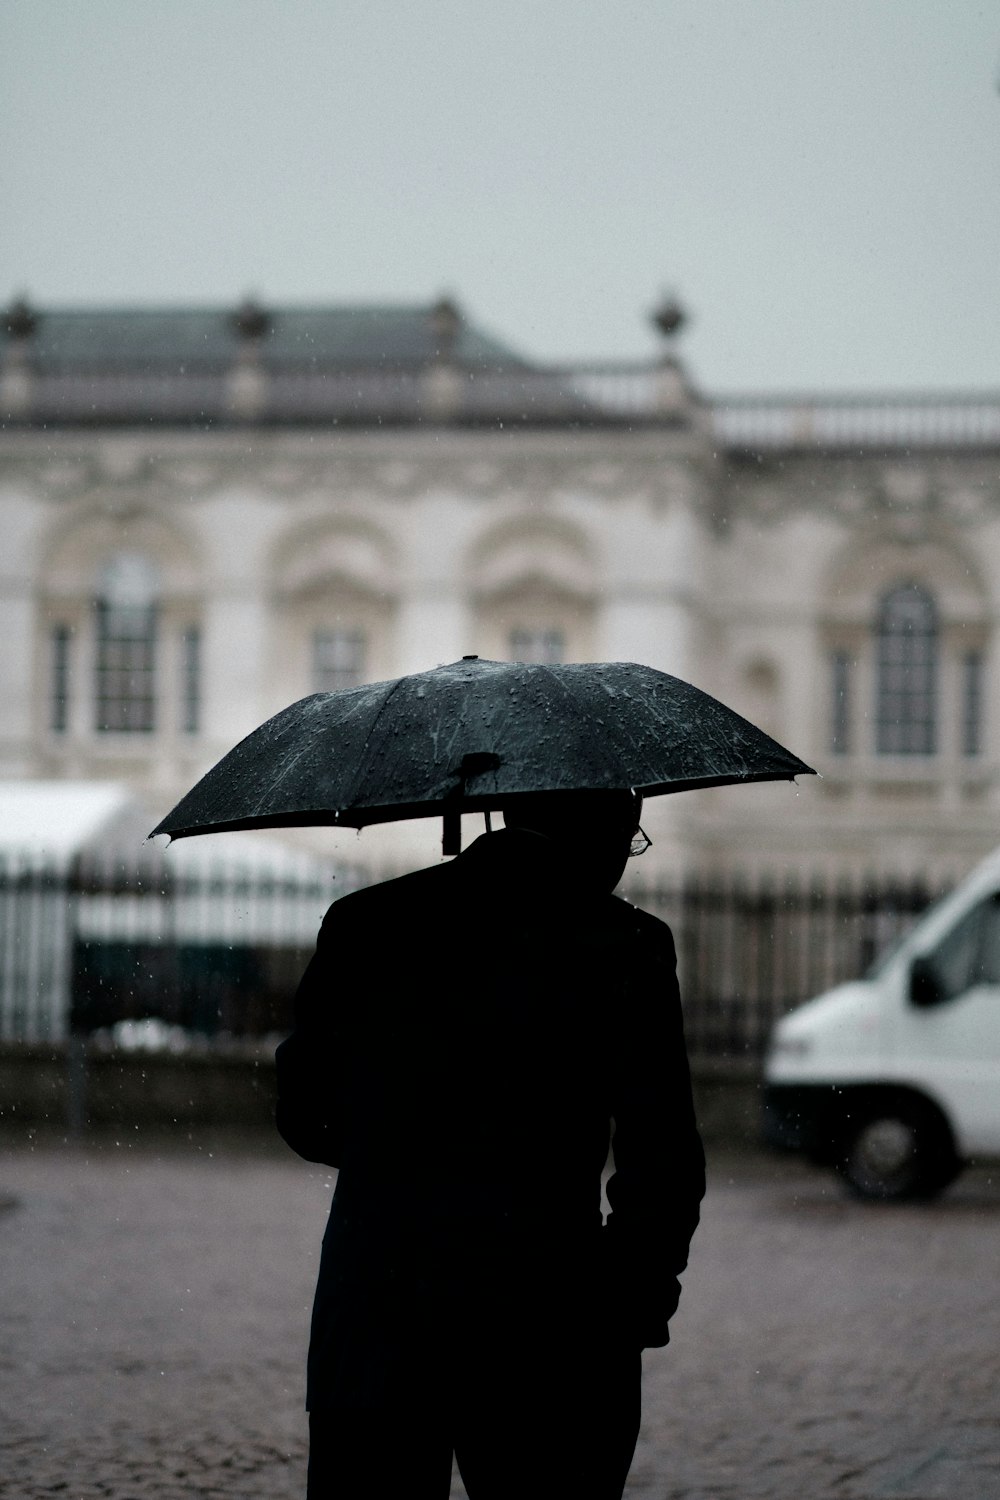 검은 우산을 들고있는 사람 흰색 차량 근처에 서있는 사람